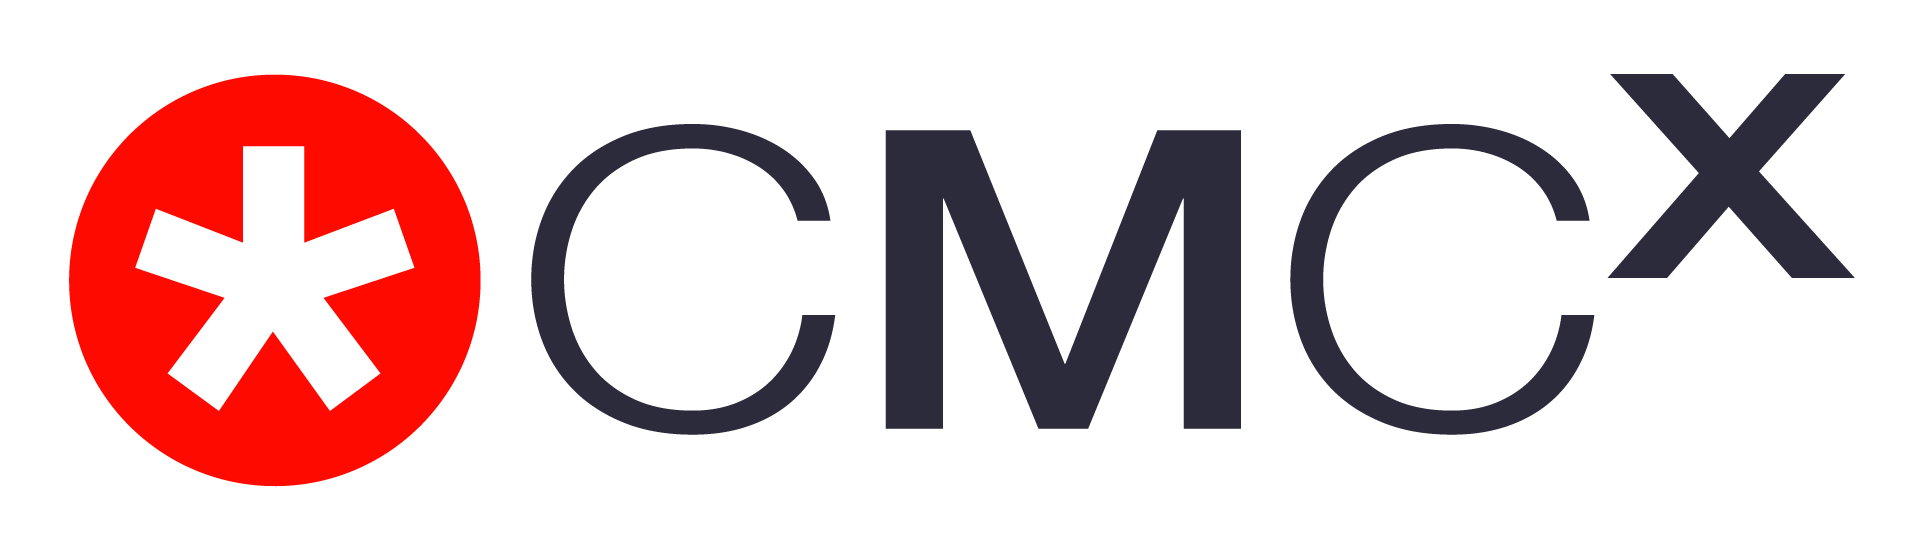 Cmcx Logo Rgb 1920x1080